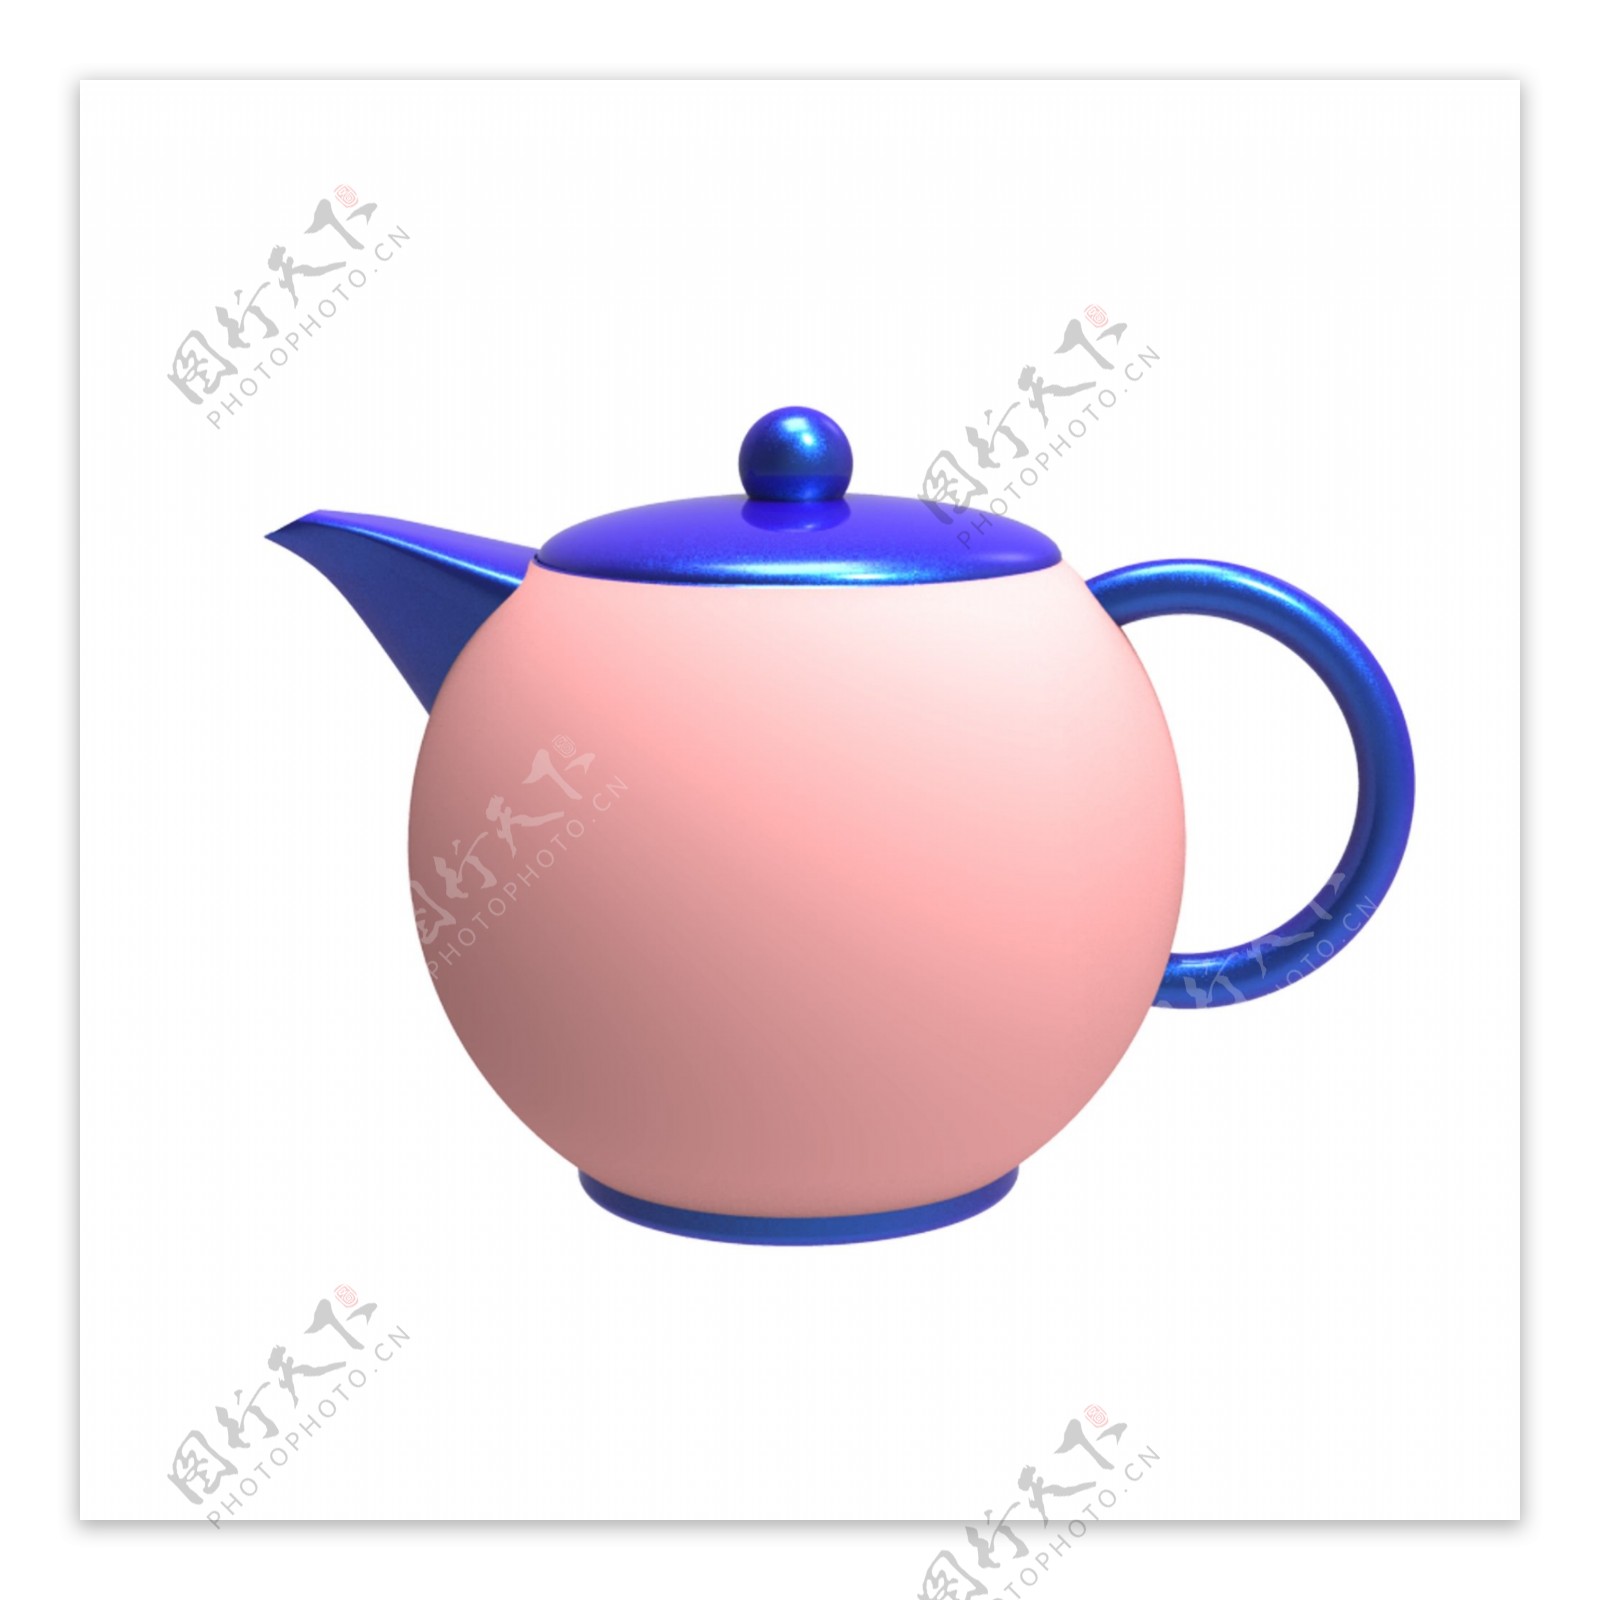 粉嘟嘟的小茶壶图案